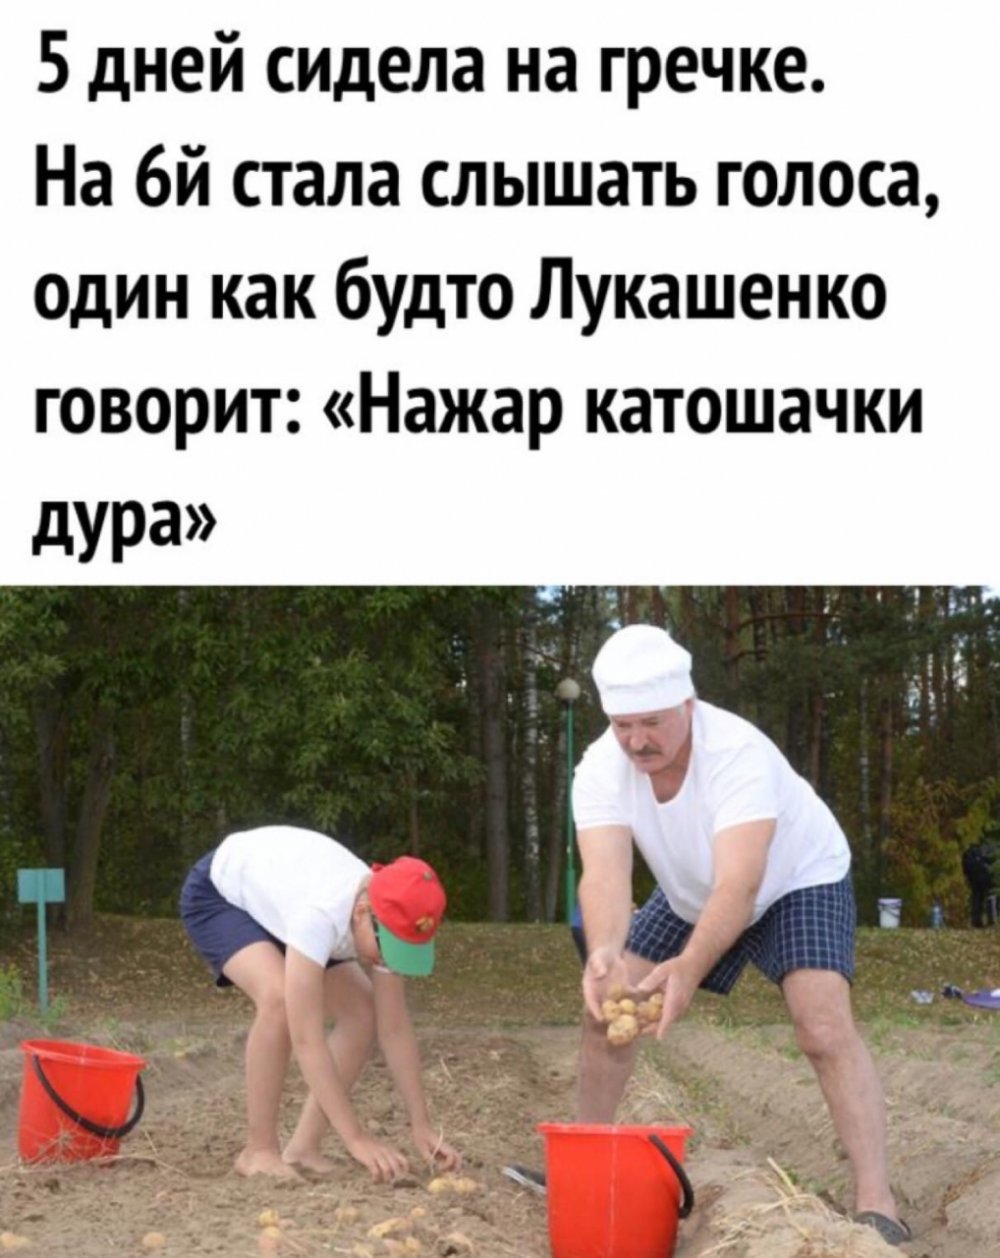 Пожарь картошечки Лукашенко